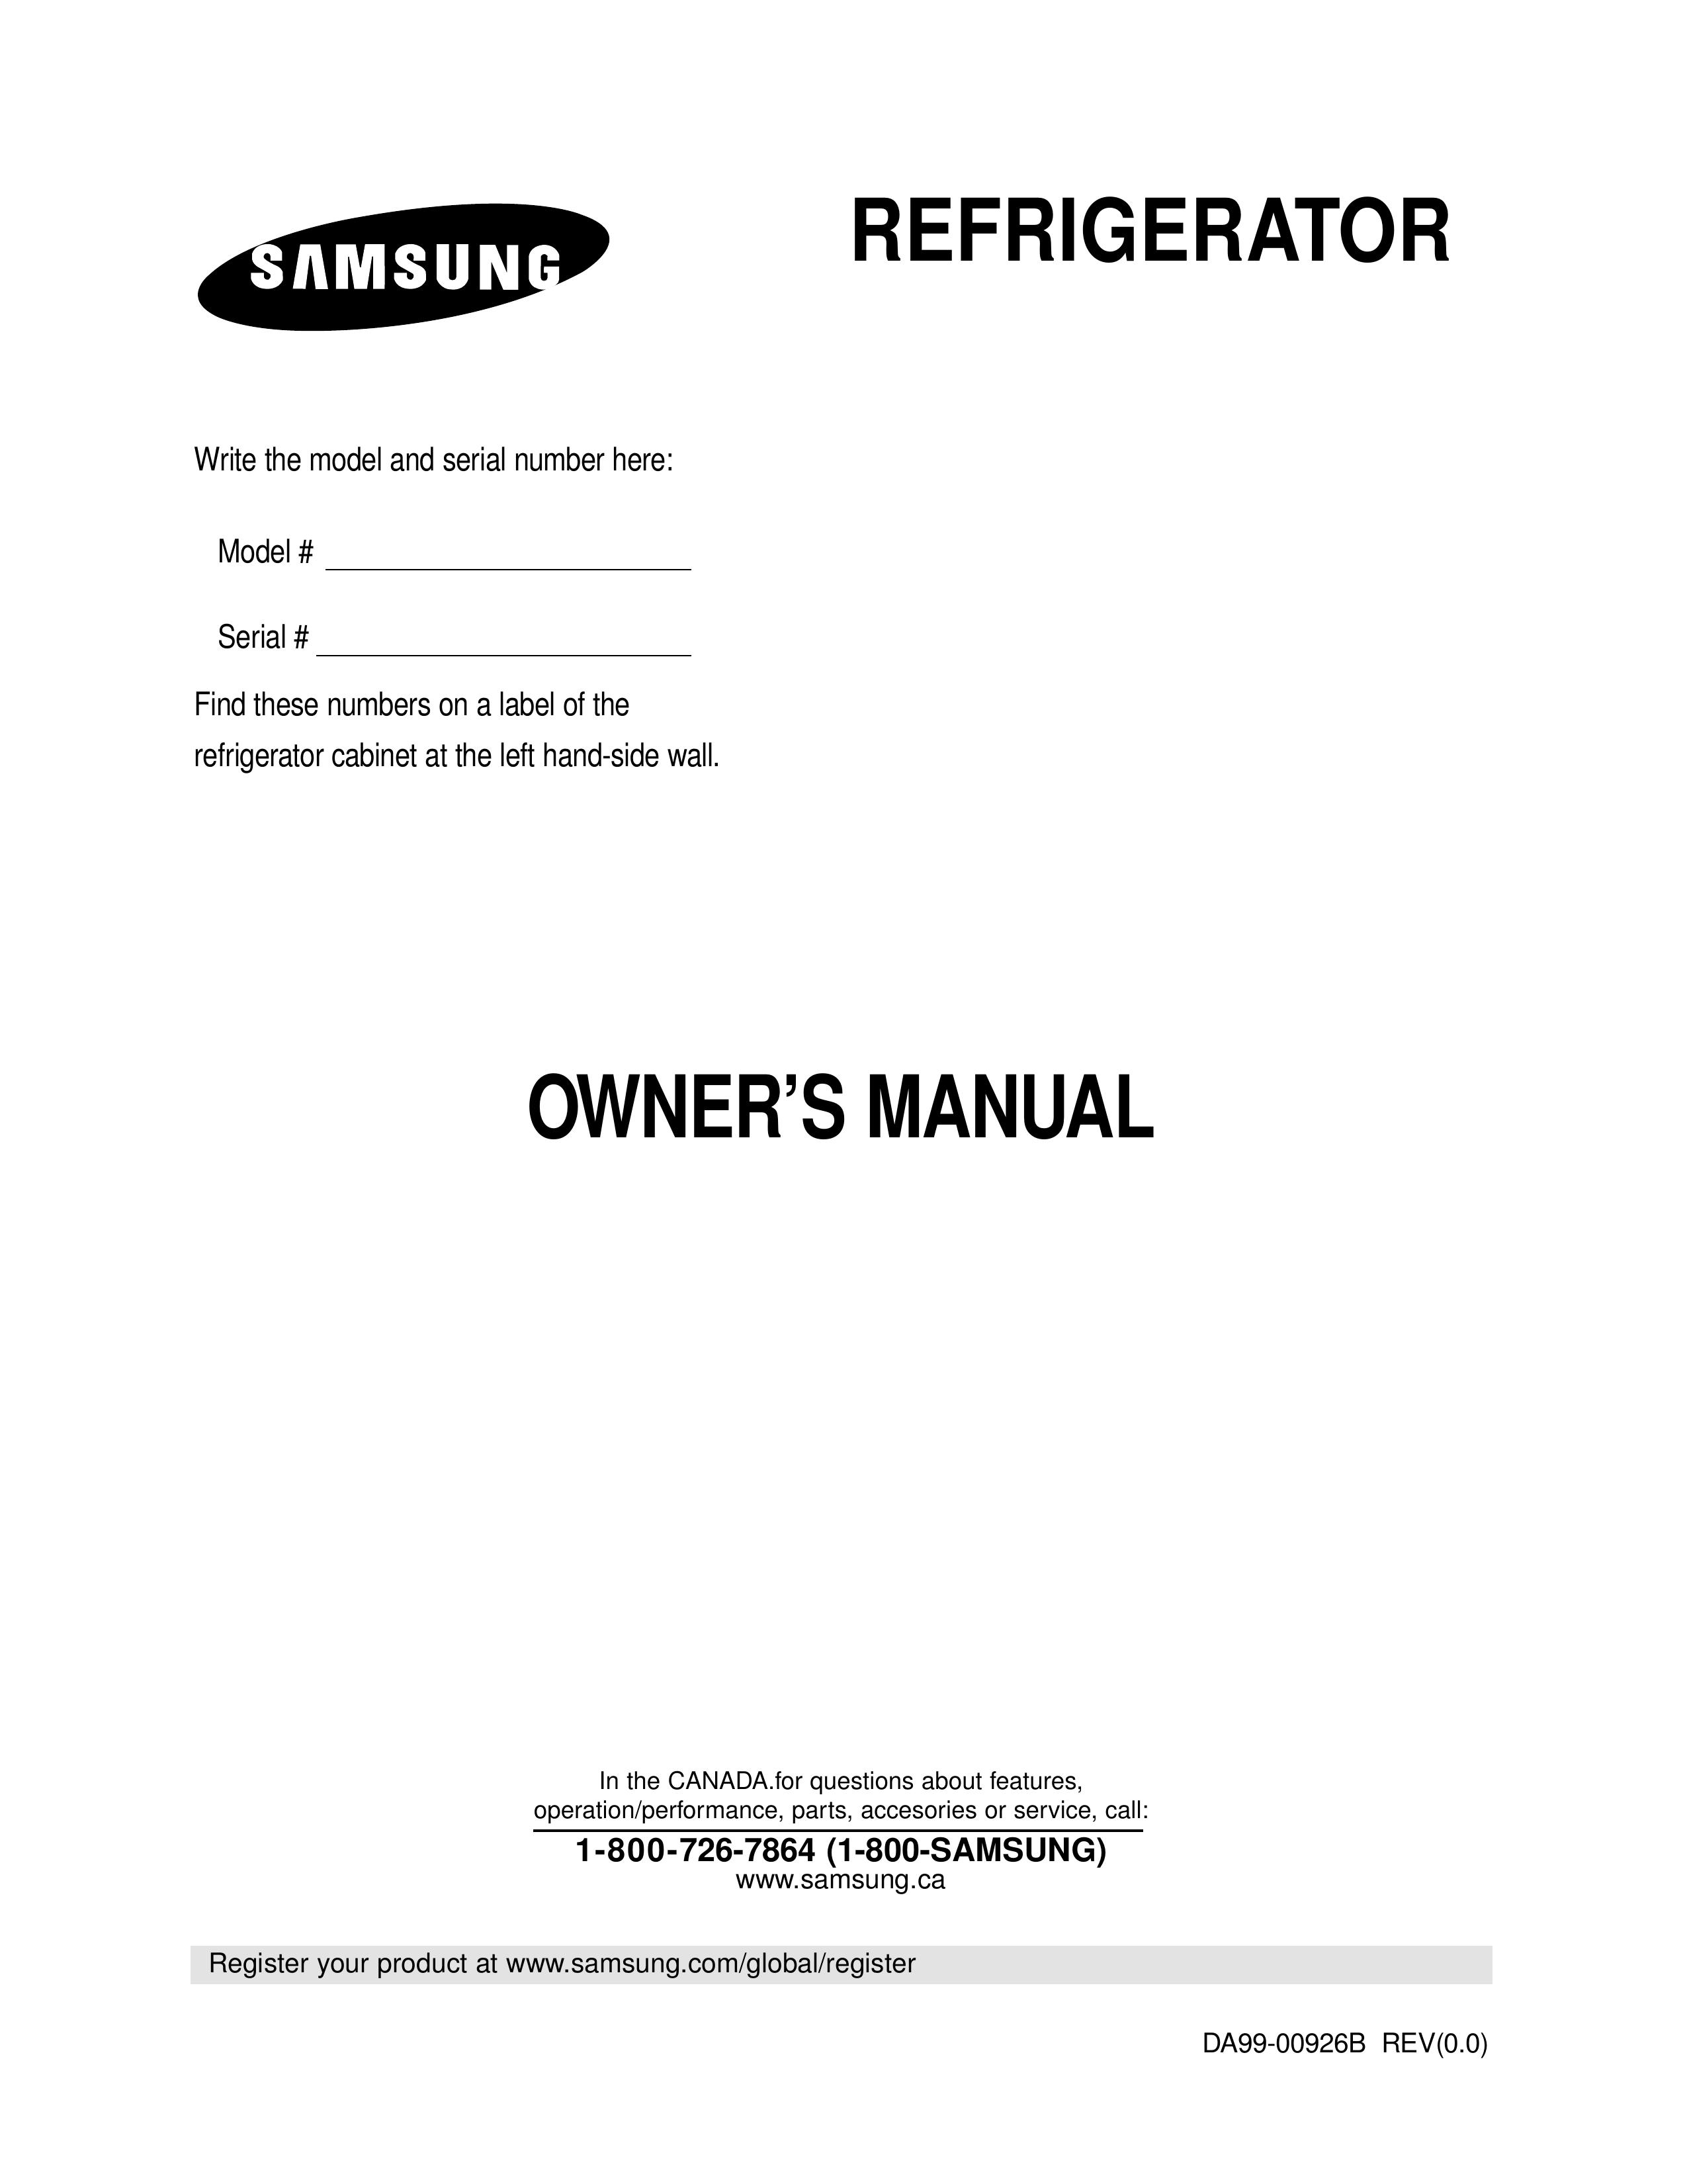 Samsung RB193KASB Refrigerator User Manual